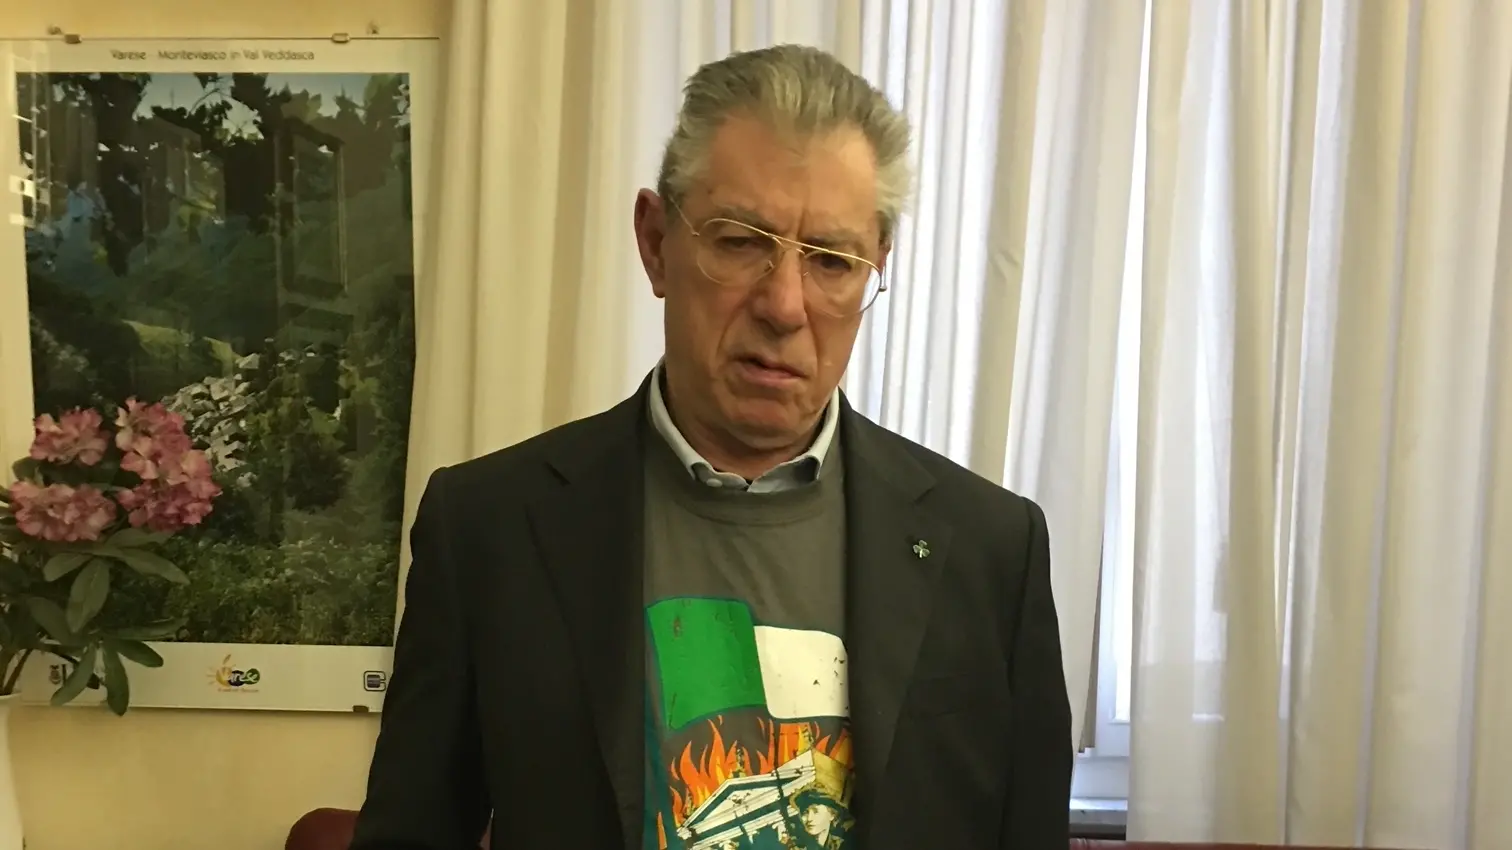 Umberto Bossi nel 2016 con la maglia che ricordava la Easter Rising